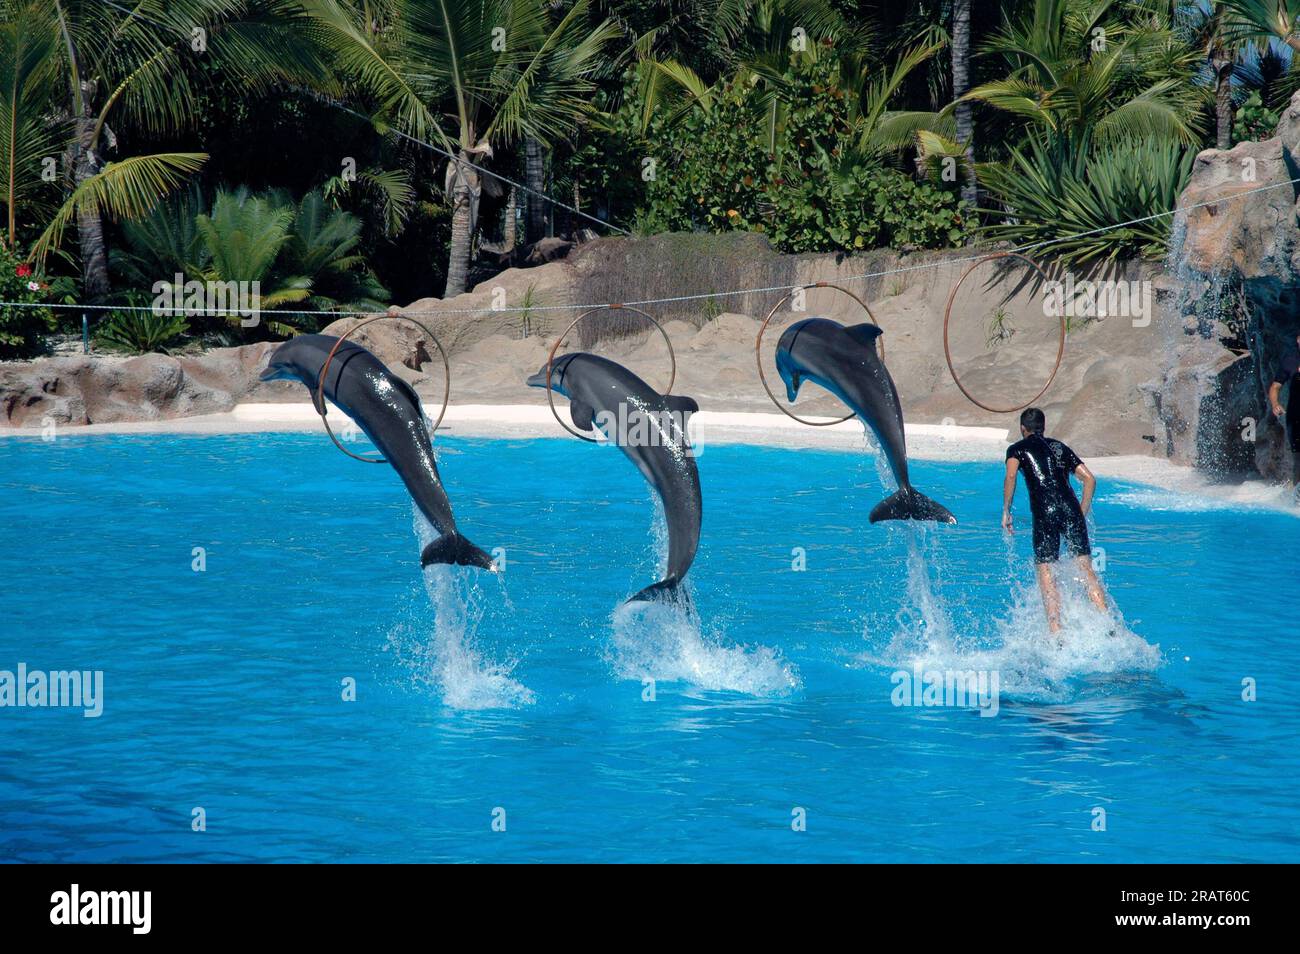 spectacle océanographique où vous pouvez voir trois dauphins sauter à travers les cerceaux et leur entraîneur. Banque D'Images